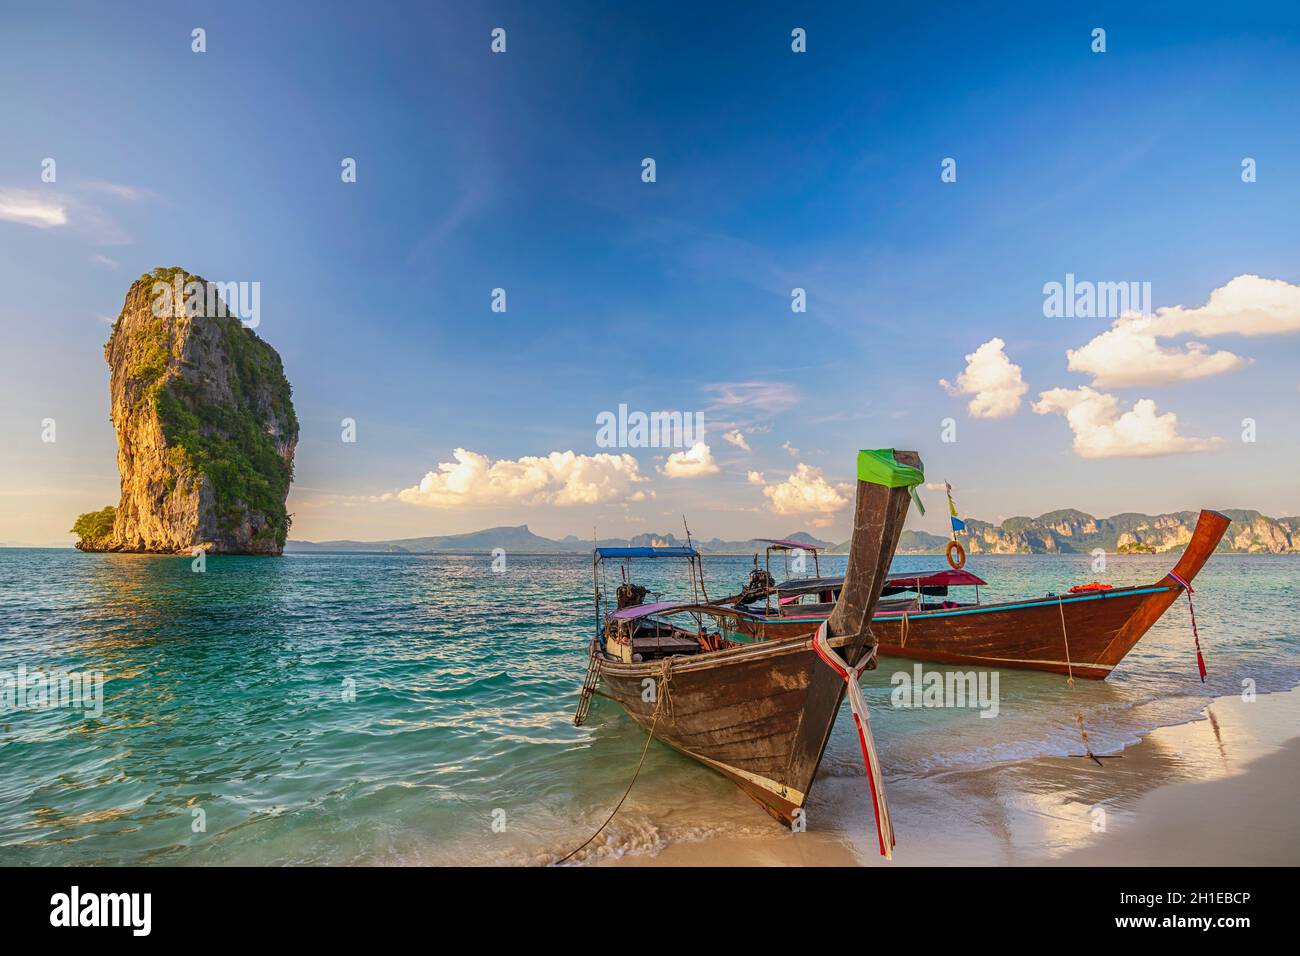 Vue sur les îles tropicales avec bateau à longue queue océan bleu eau de mer et plage de sable blanc, Krabi Thaïlande nature paysage Banque D'Images